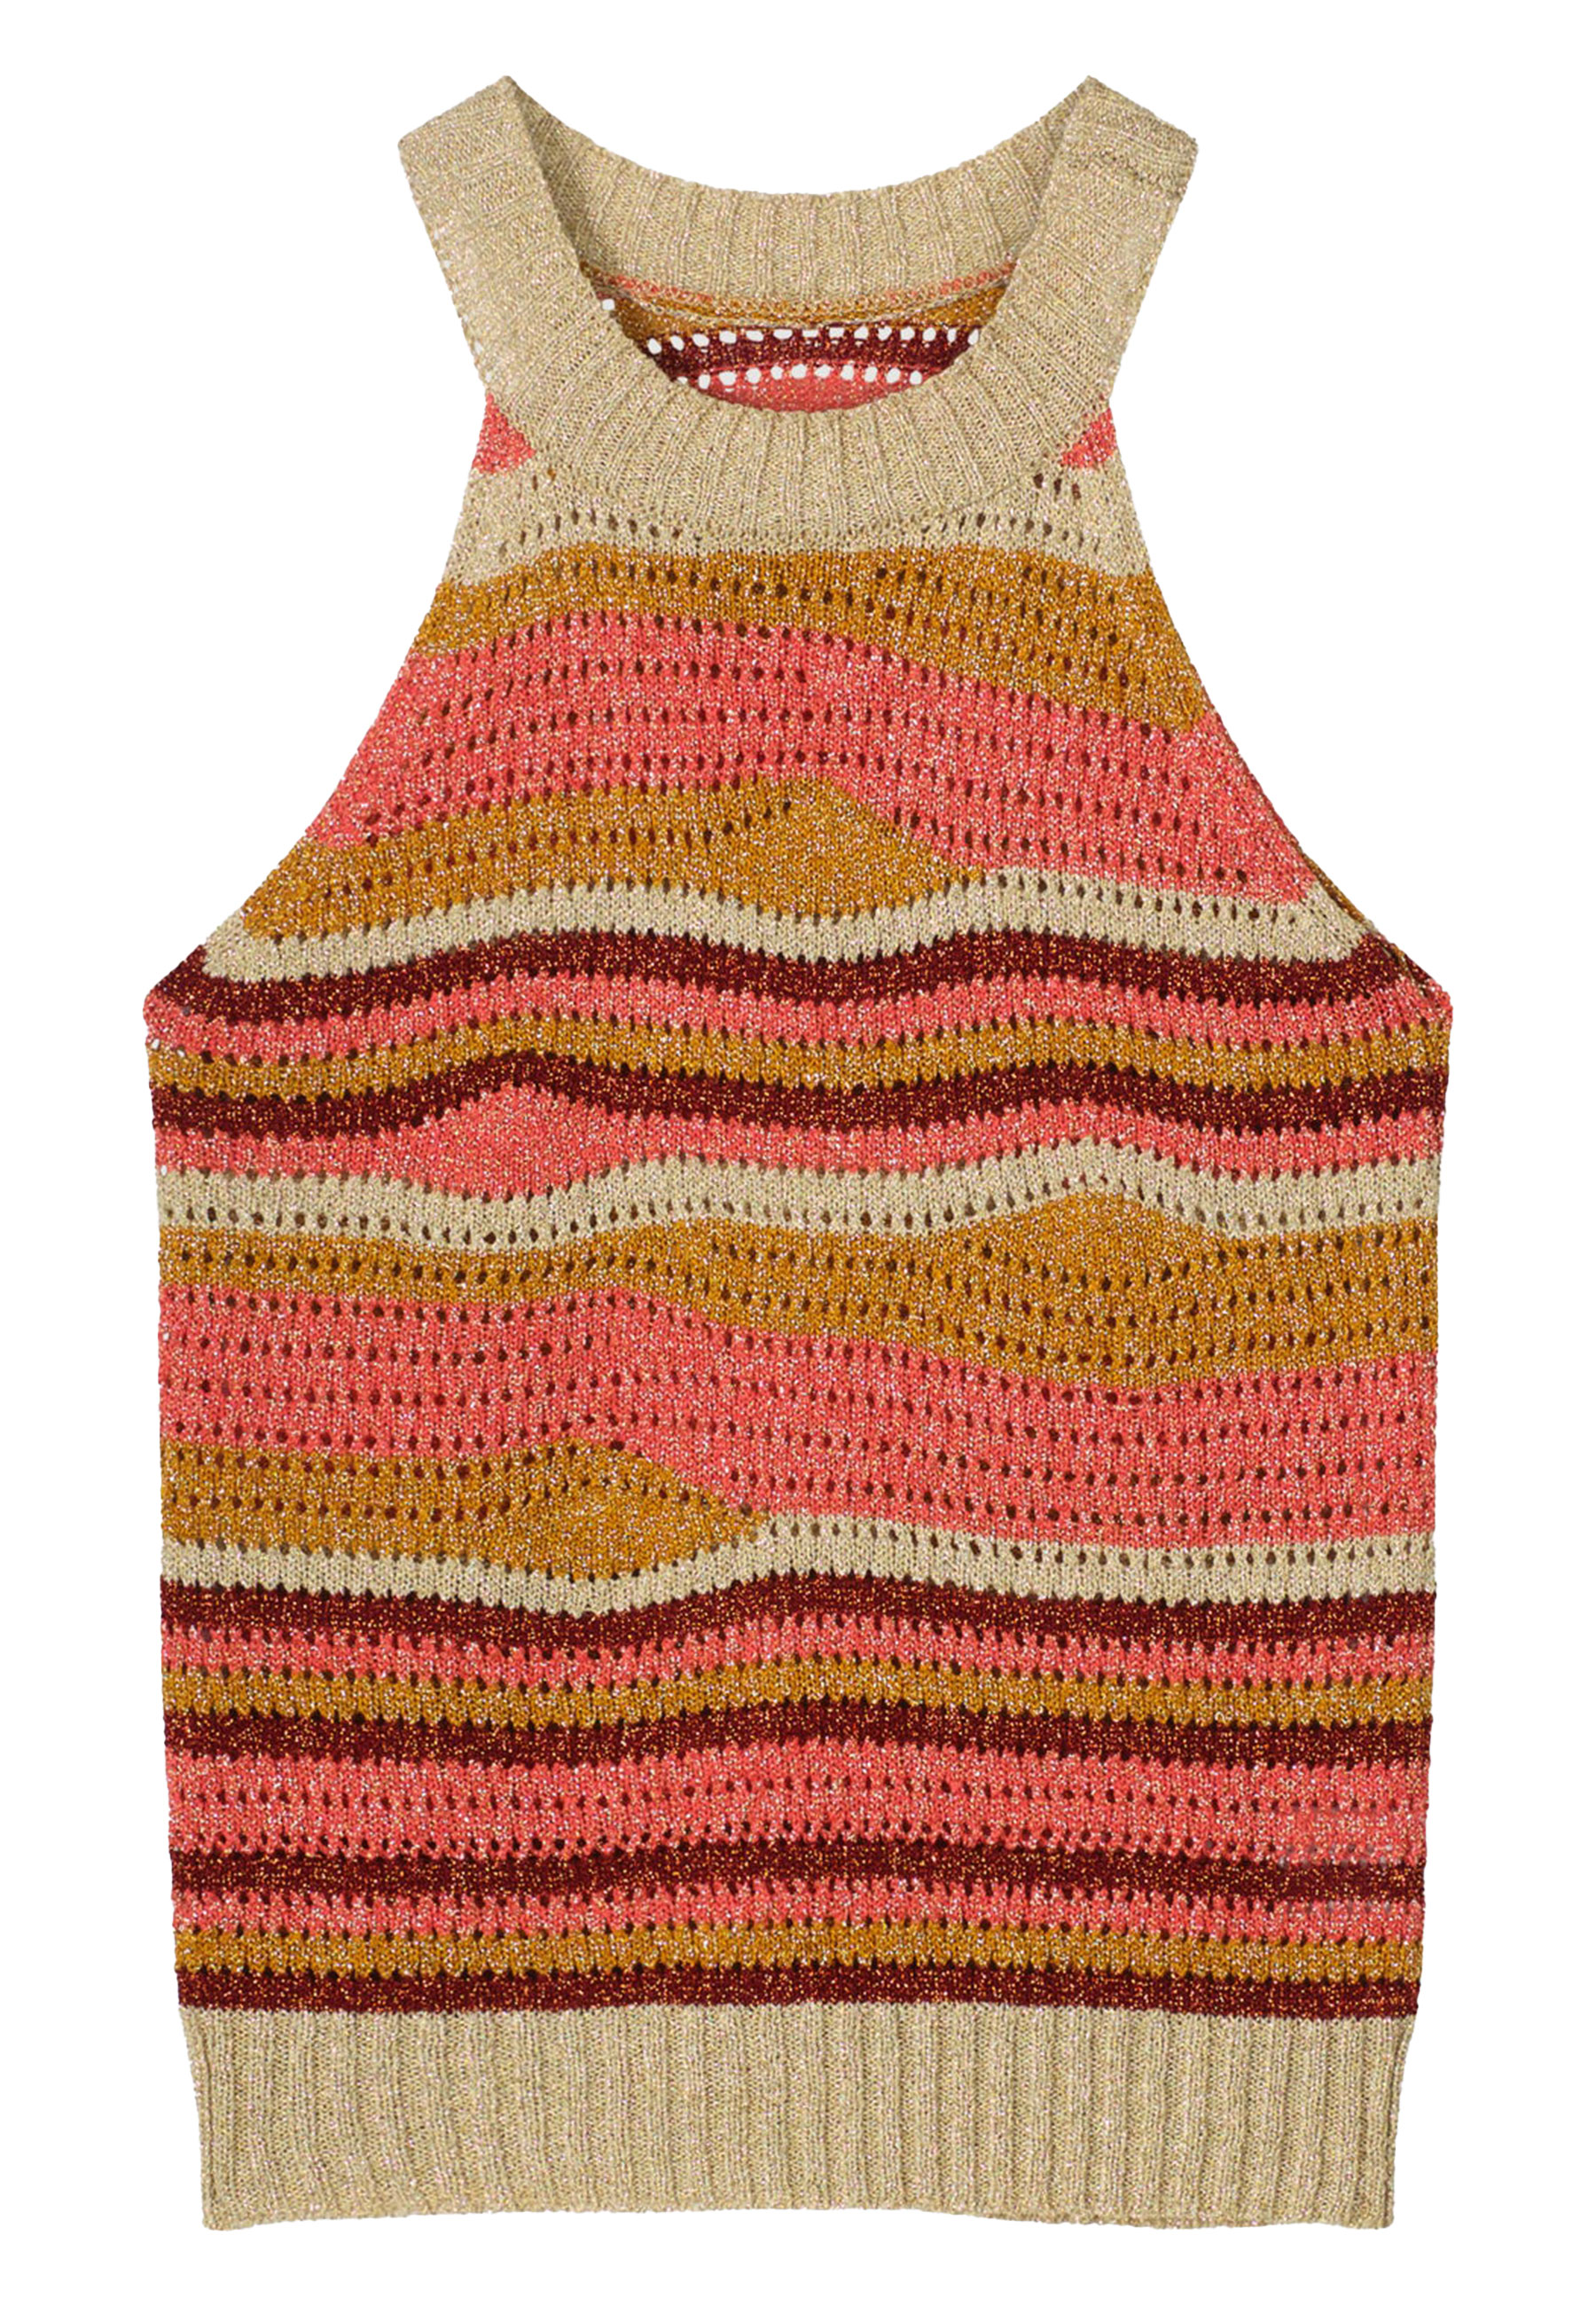 7s5841-7990 Halter top lurex swirl knit